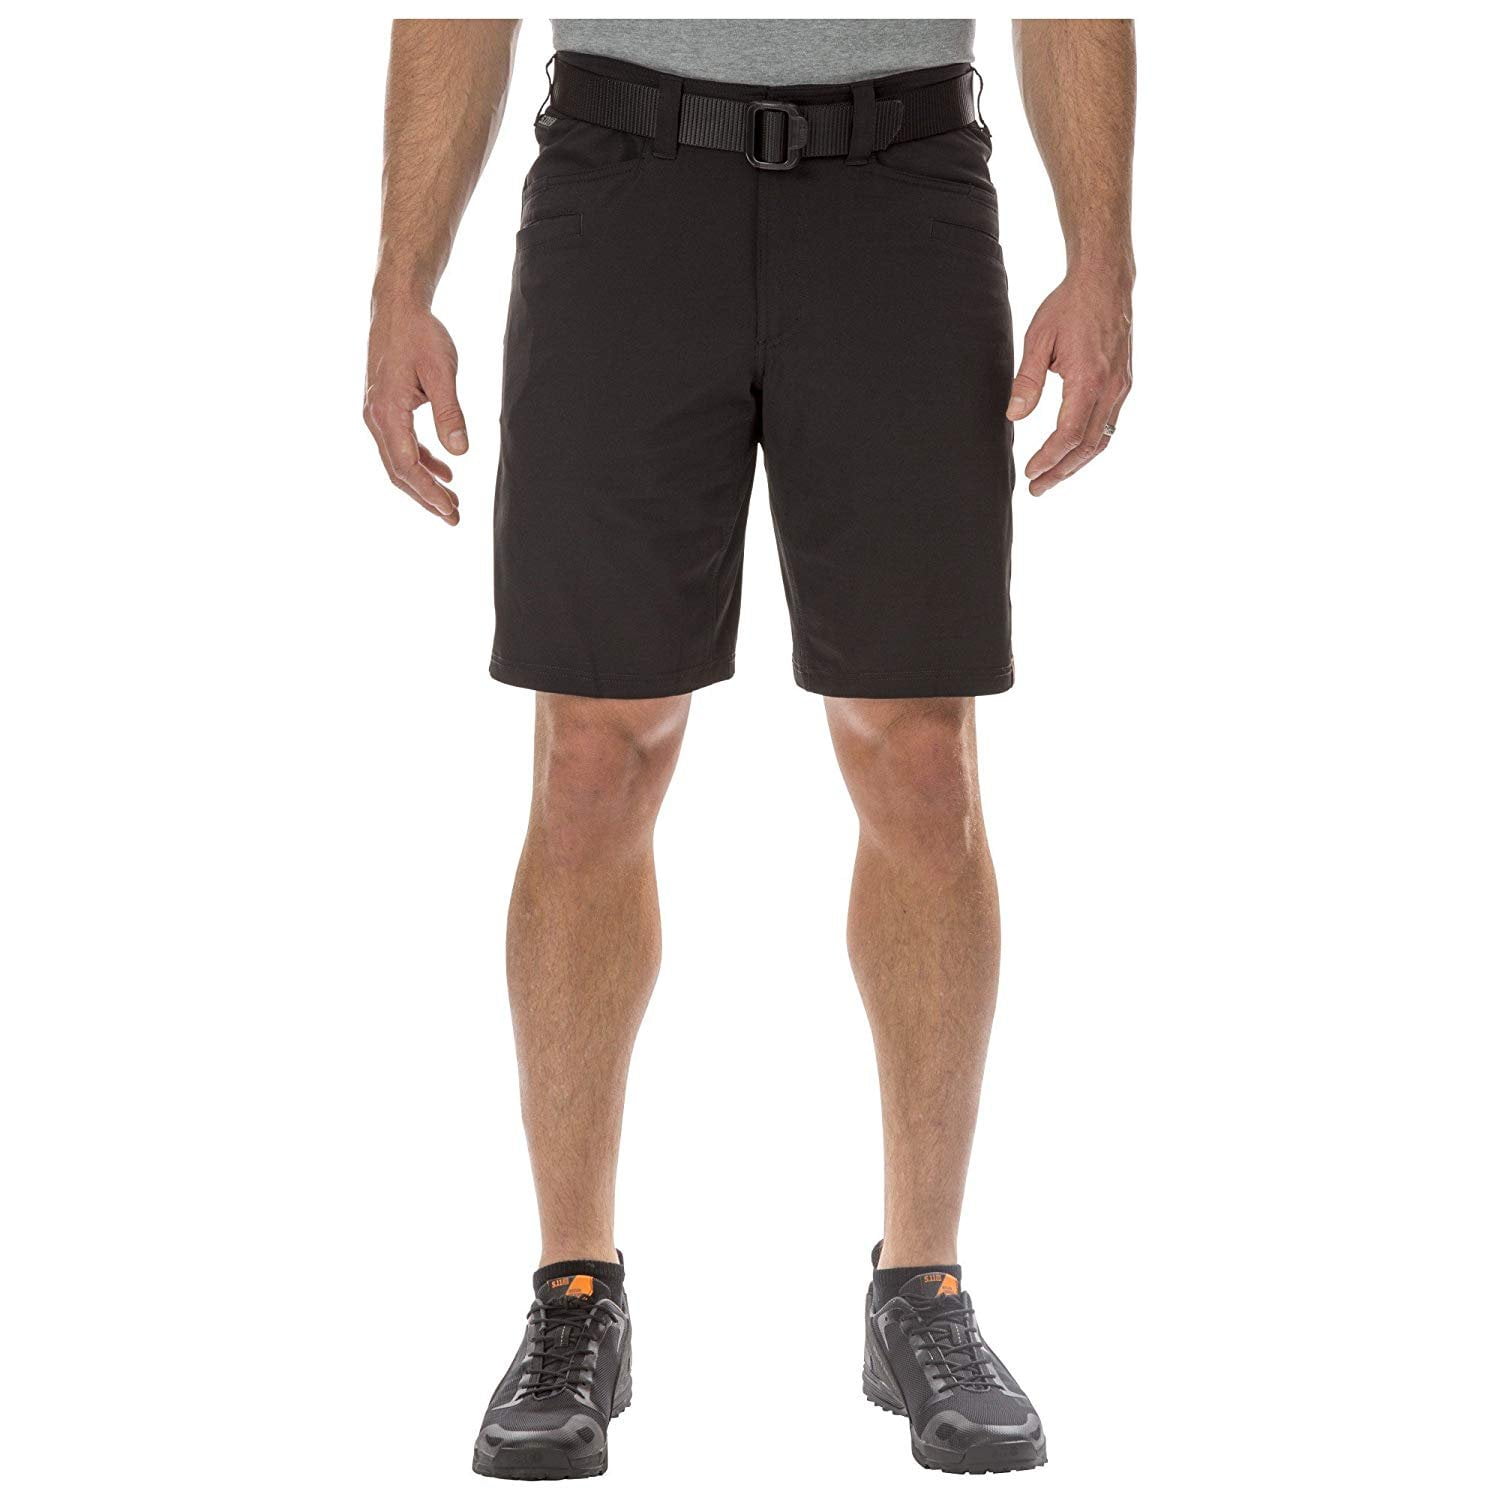 shorts 11 inch inseam